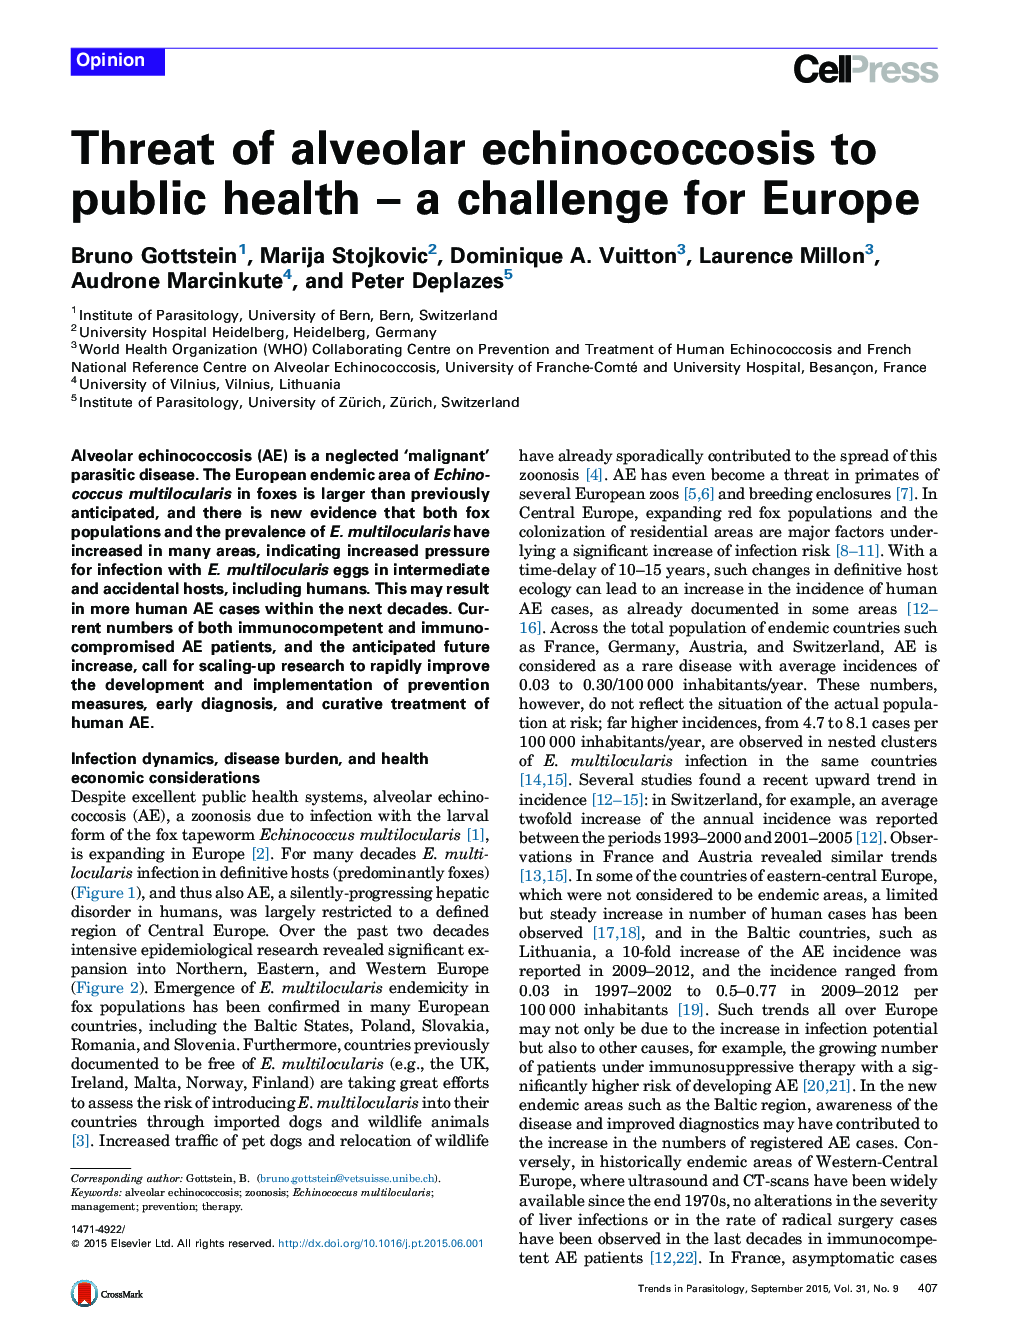 تهدید اکینوکوکوز آلوئولر به سلامت عمومی یک چالش برای اروپا 